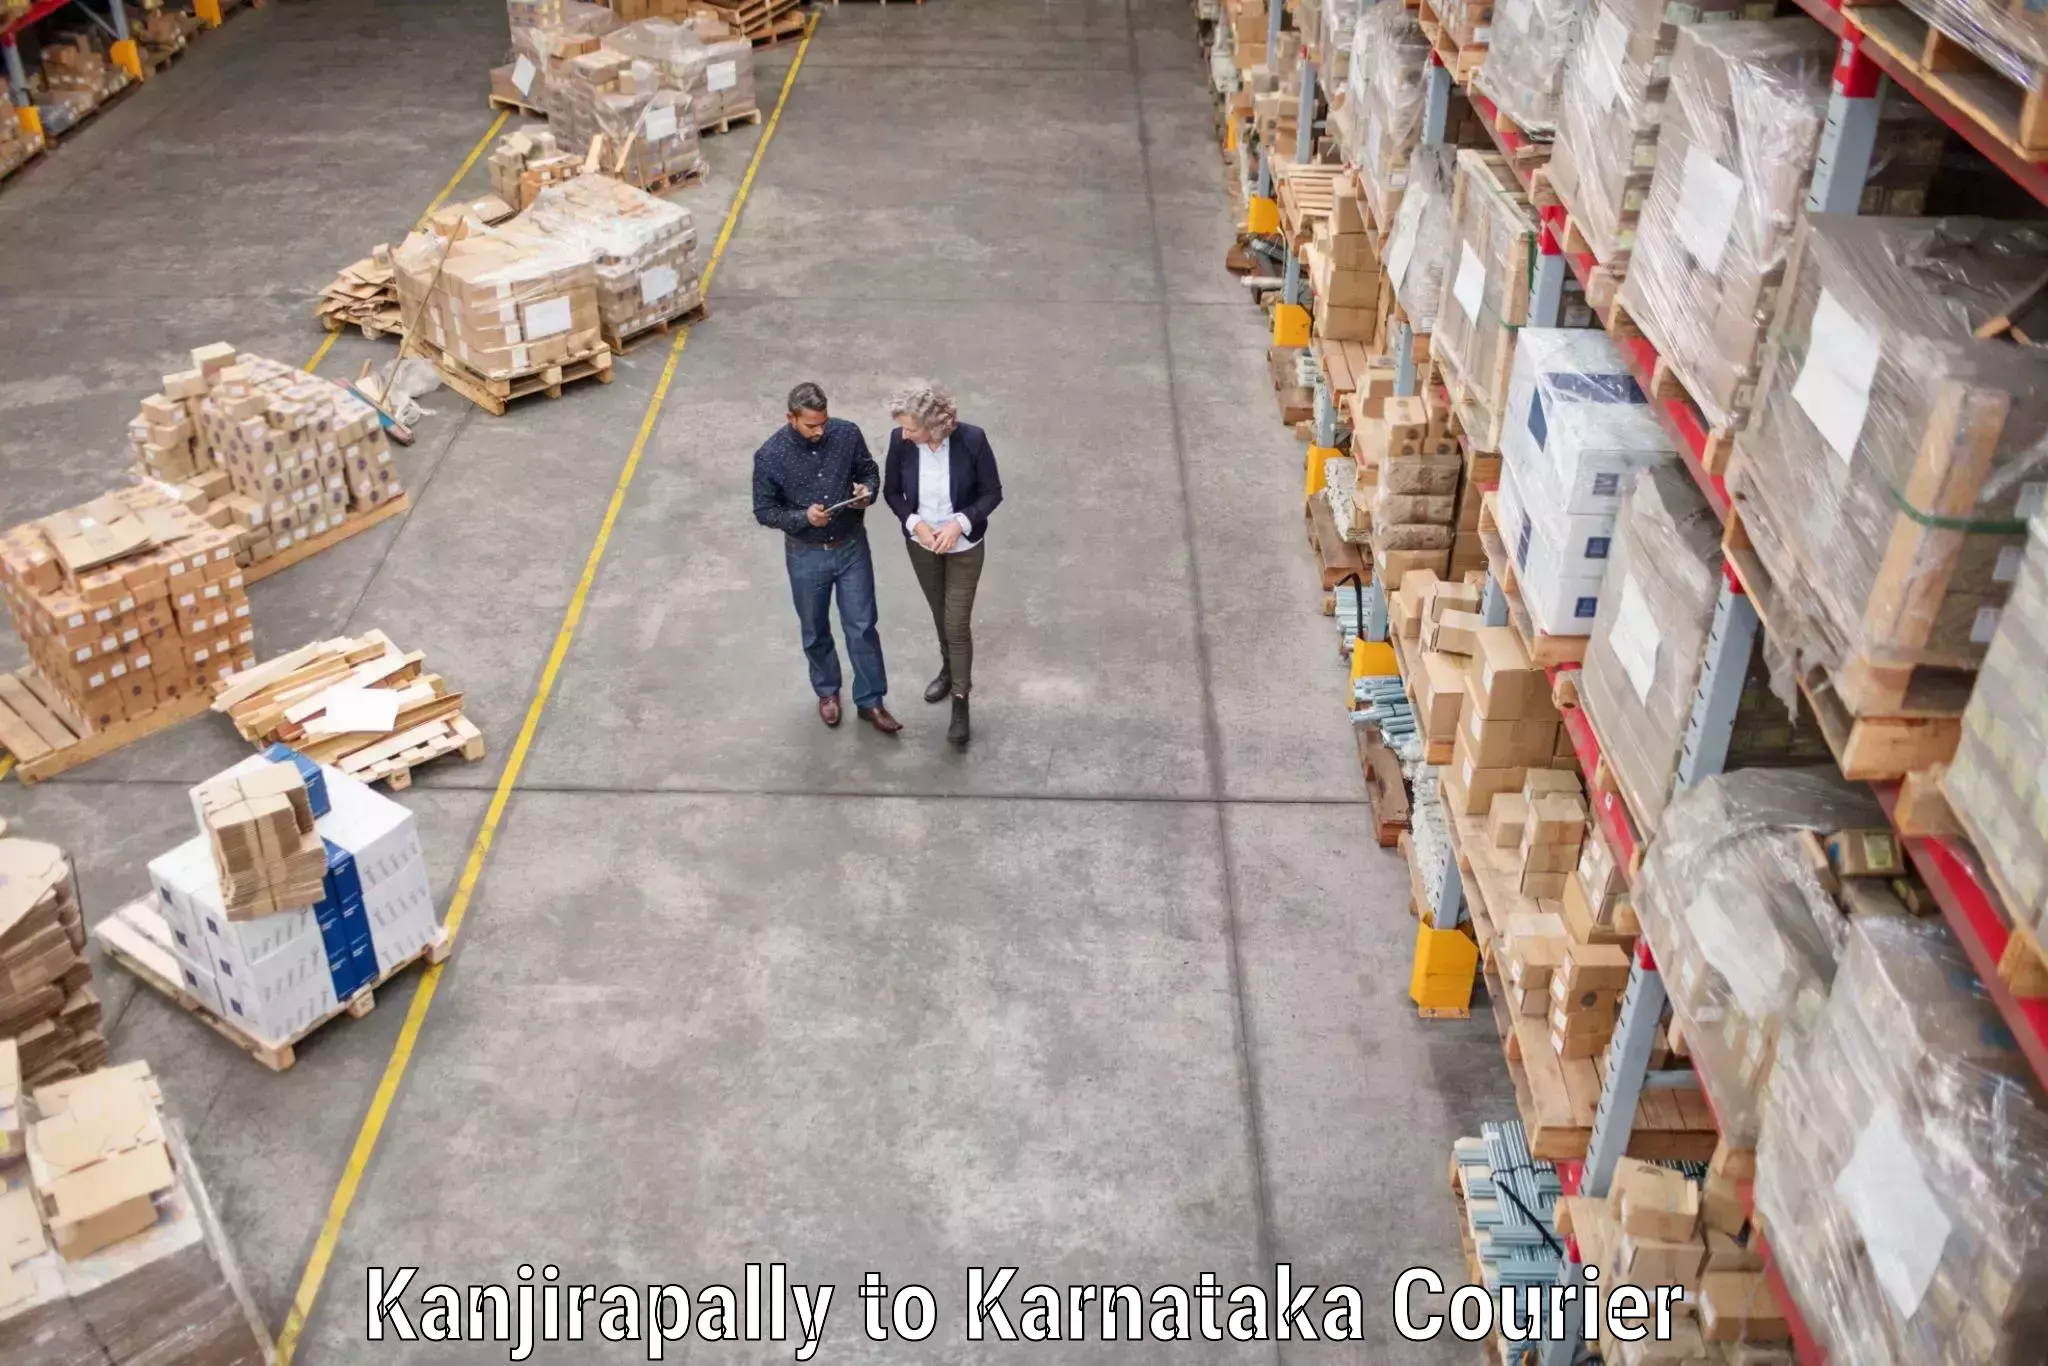 Trusted moving company Kanjirapally to Belgaum